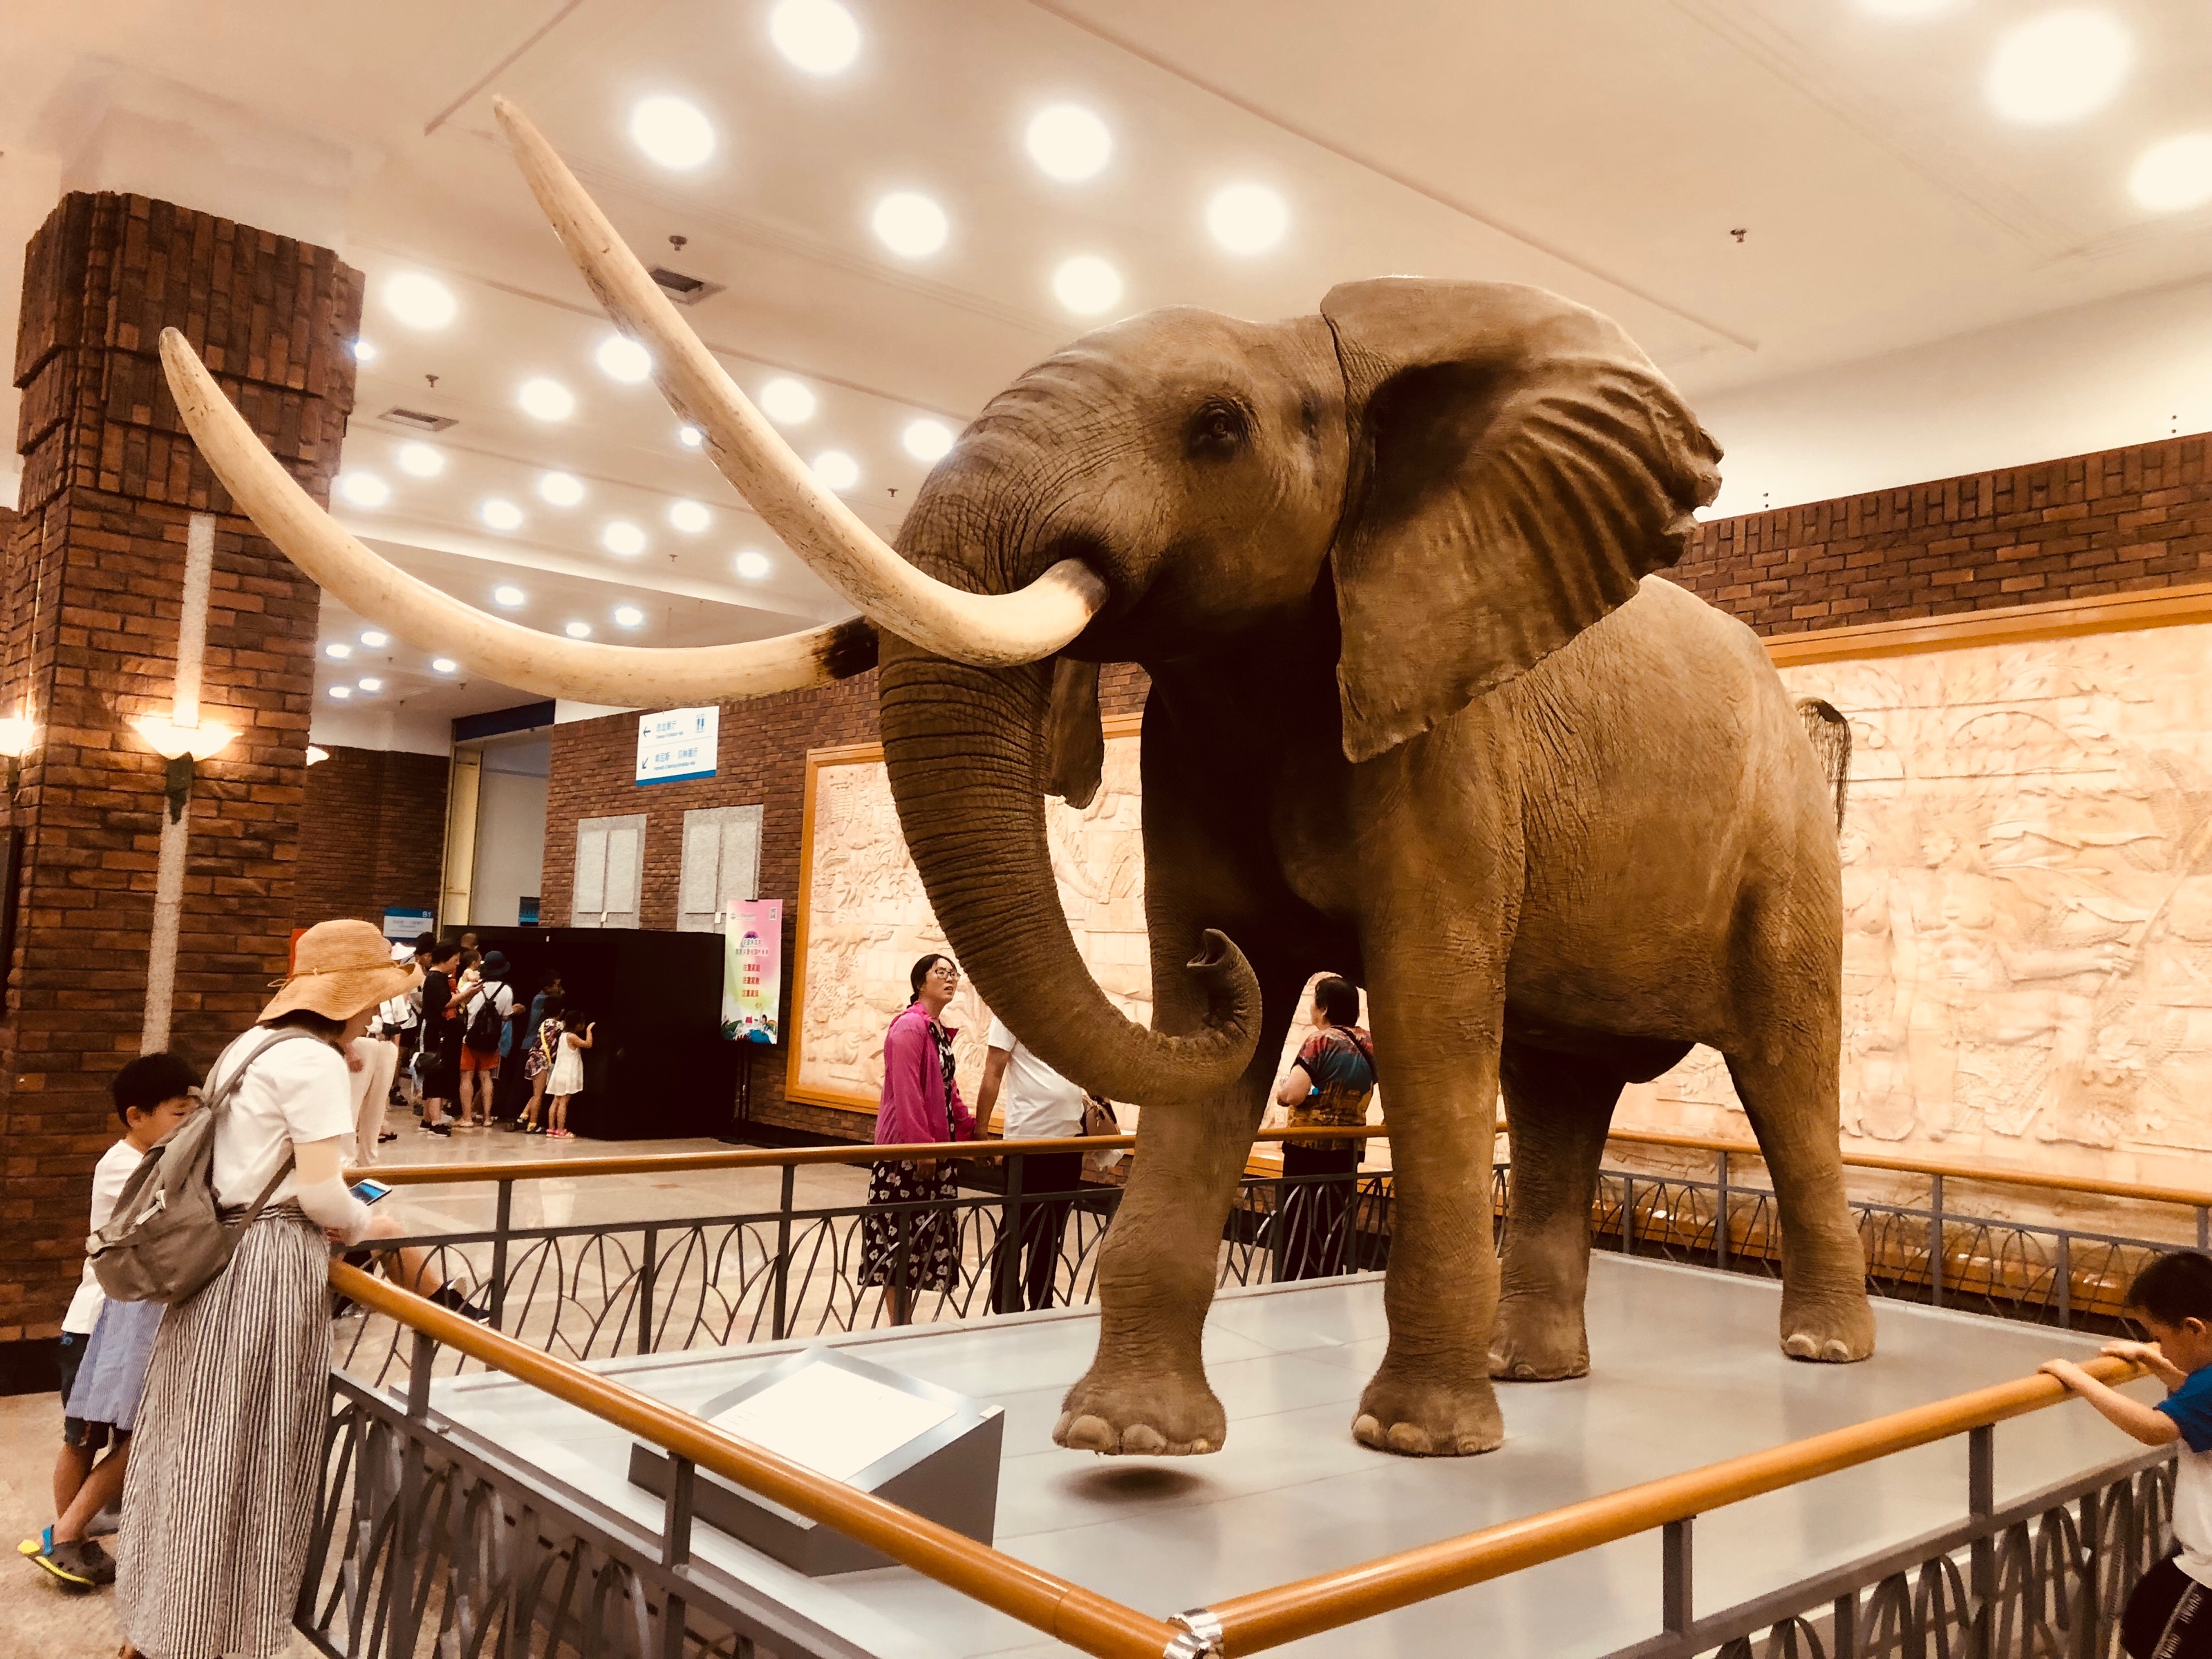 2019大连自然博物馆游玩攻略,最好看的是非洲动物展厅,模